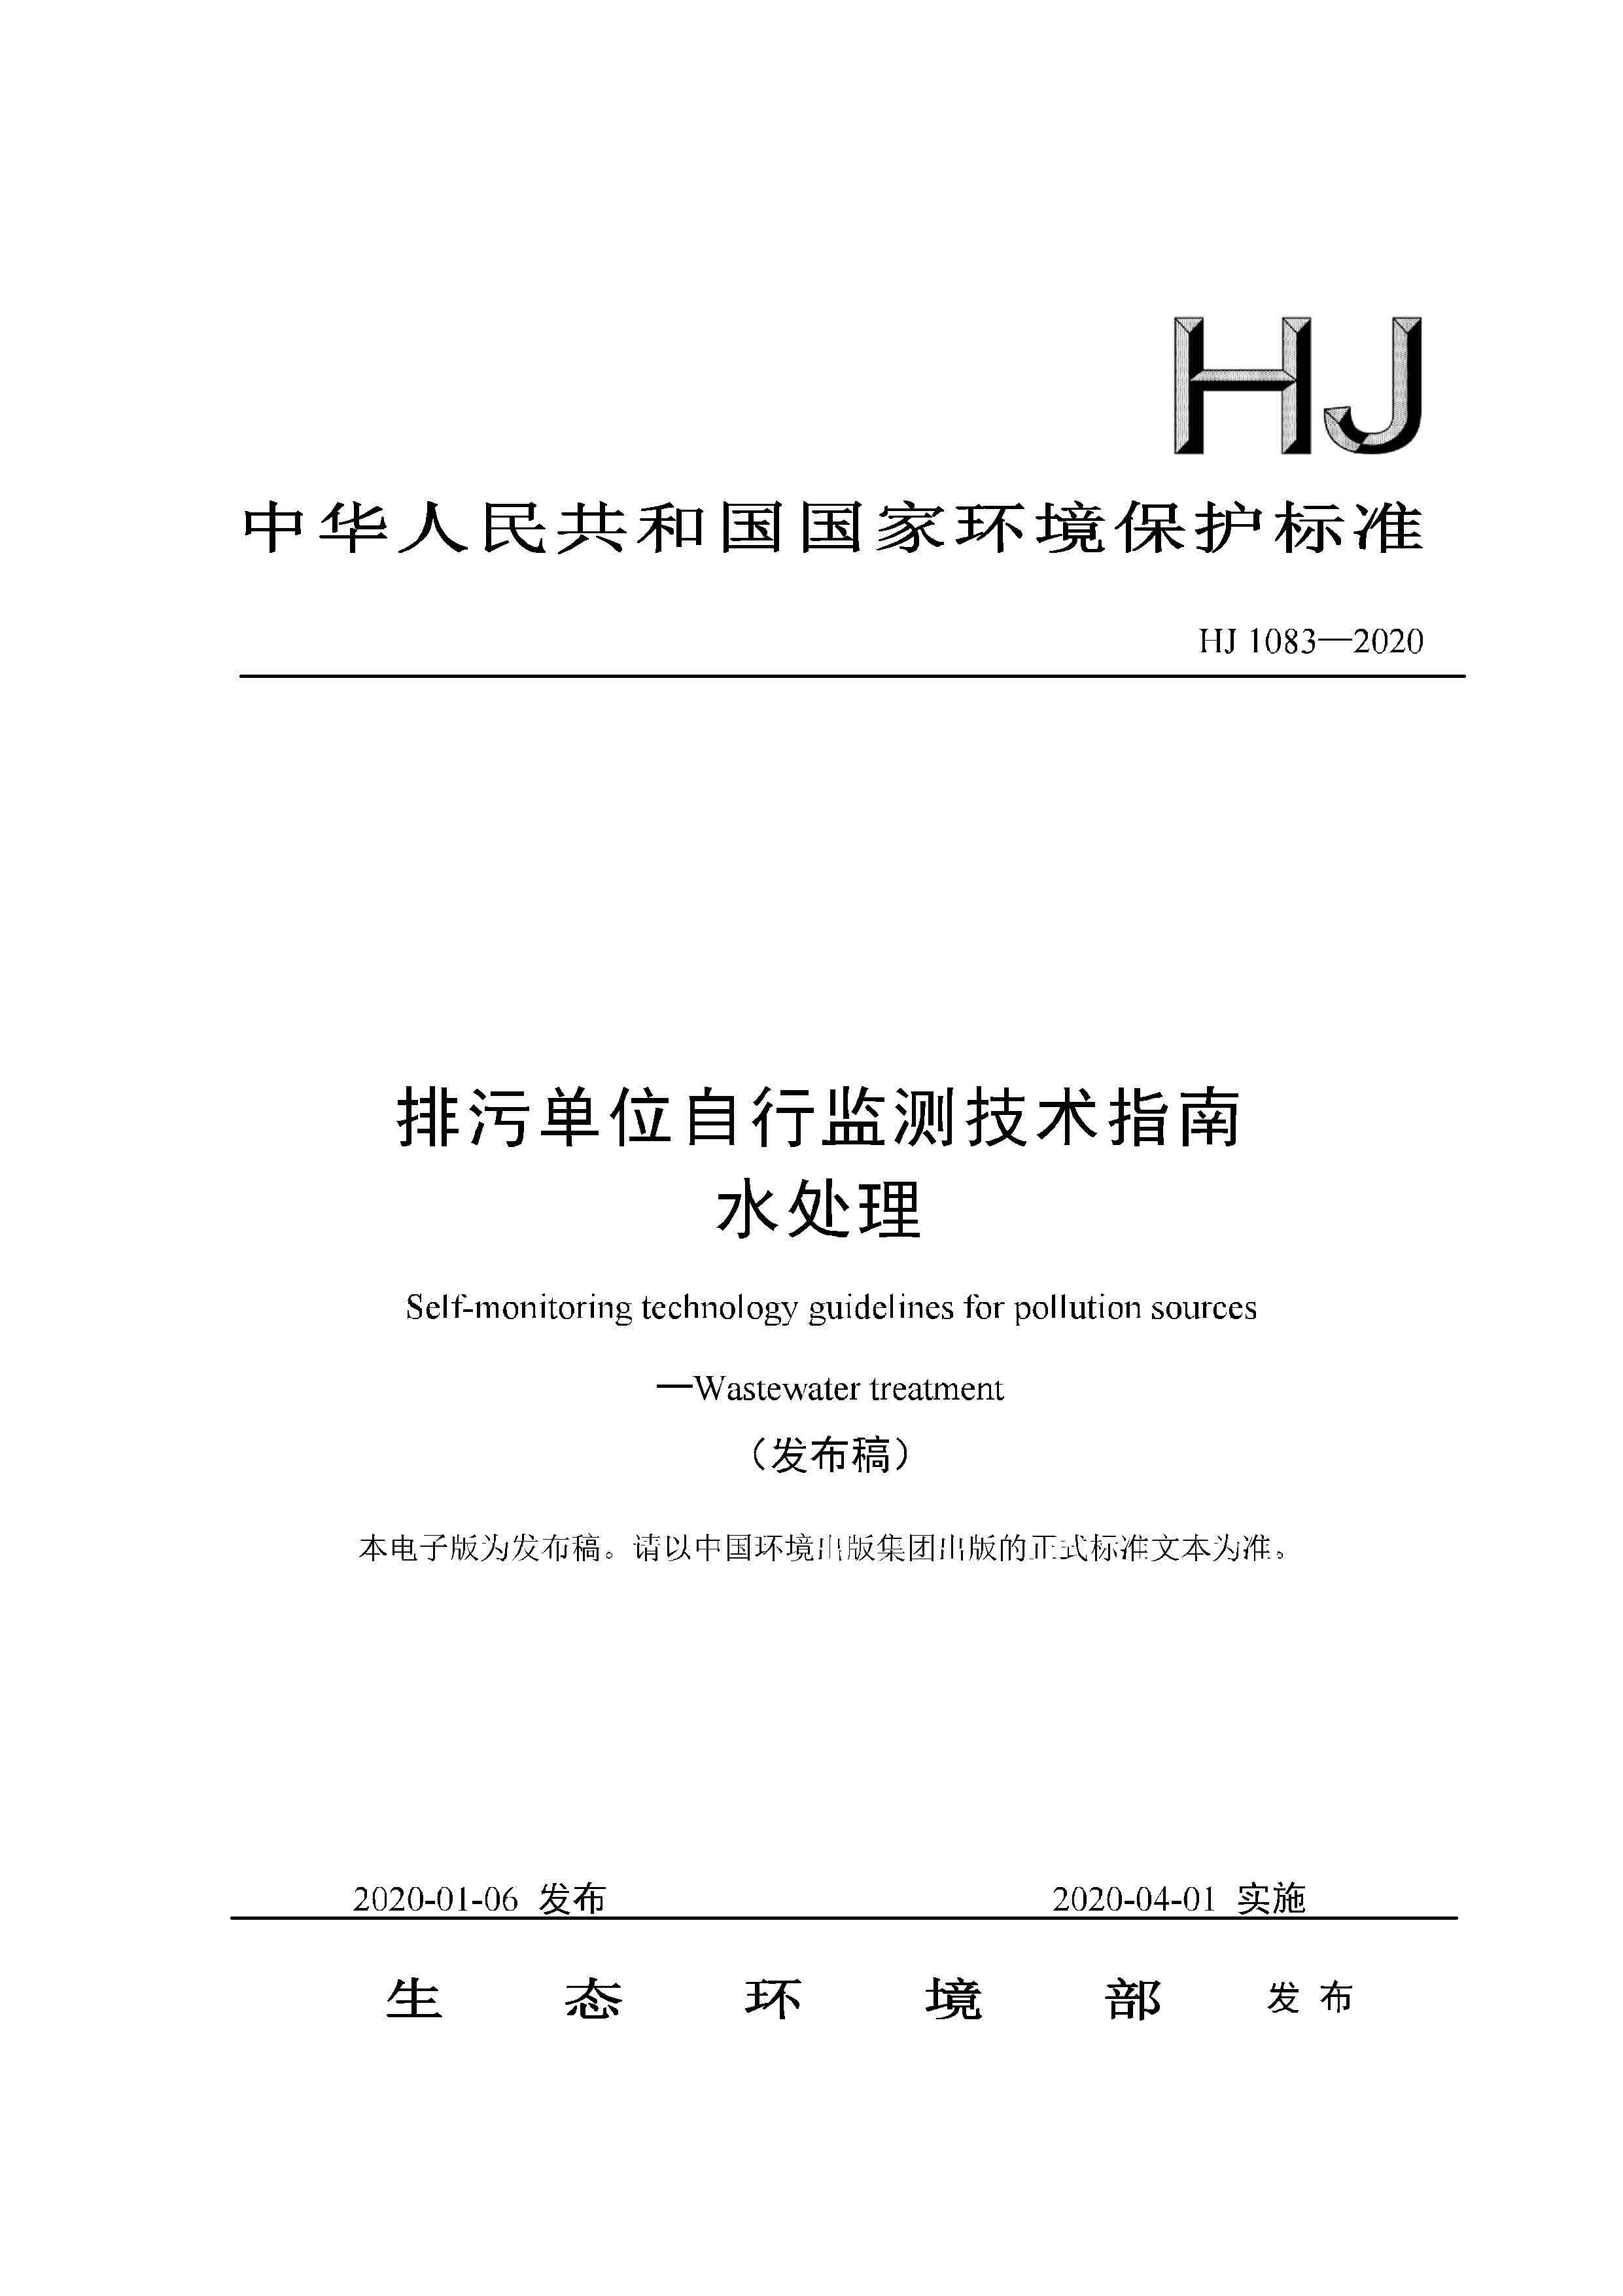 排污单位自行监测技术指南水处理HJ1083-2020